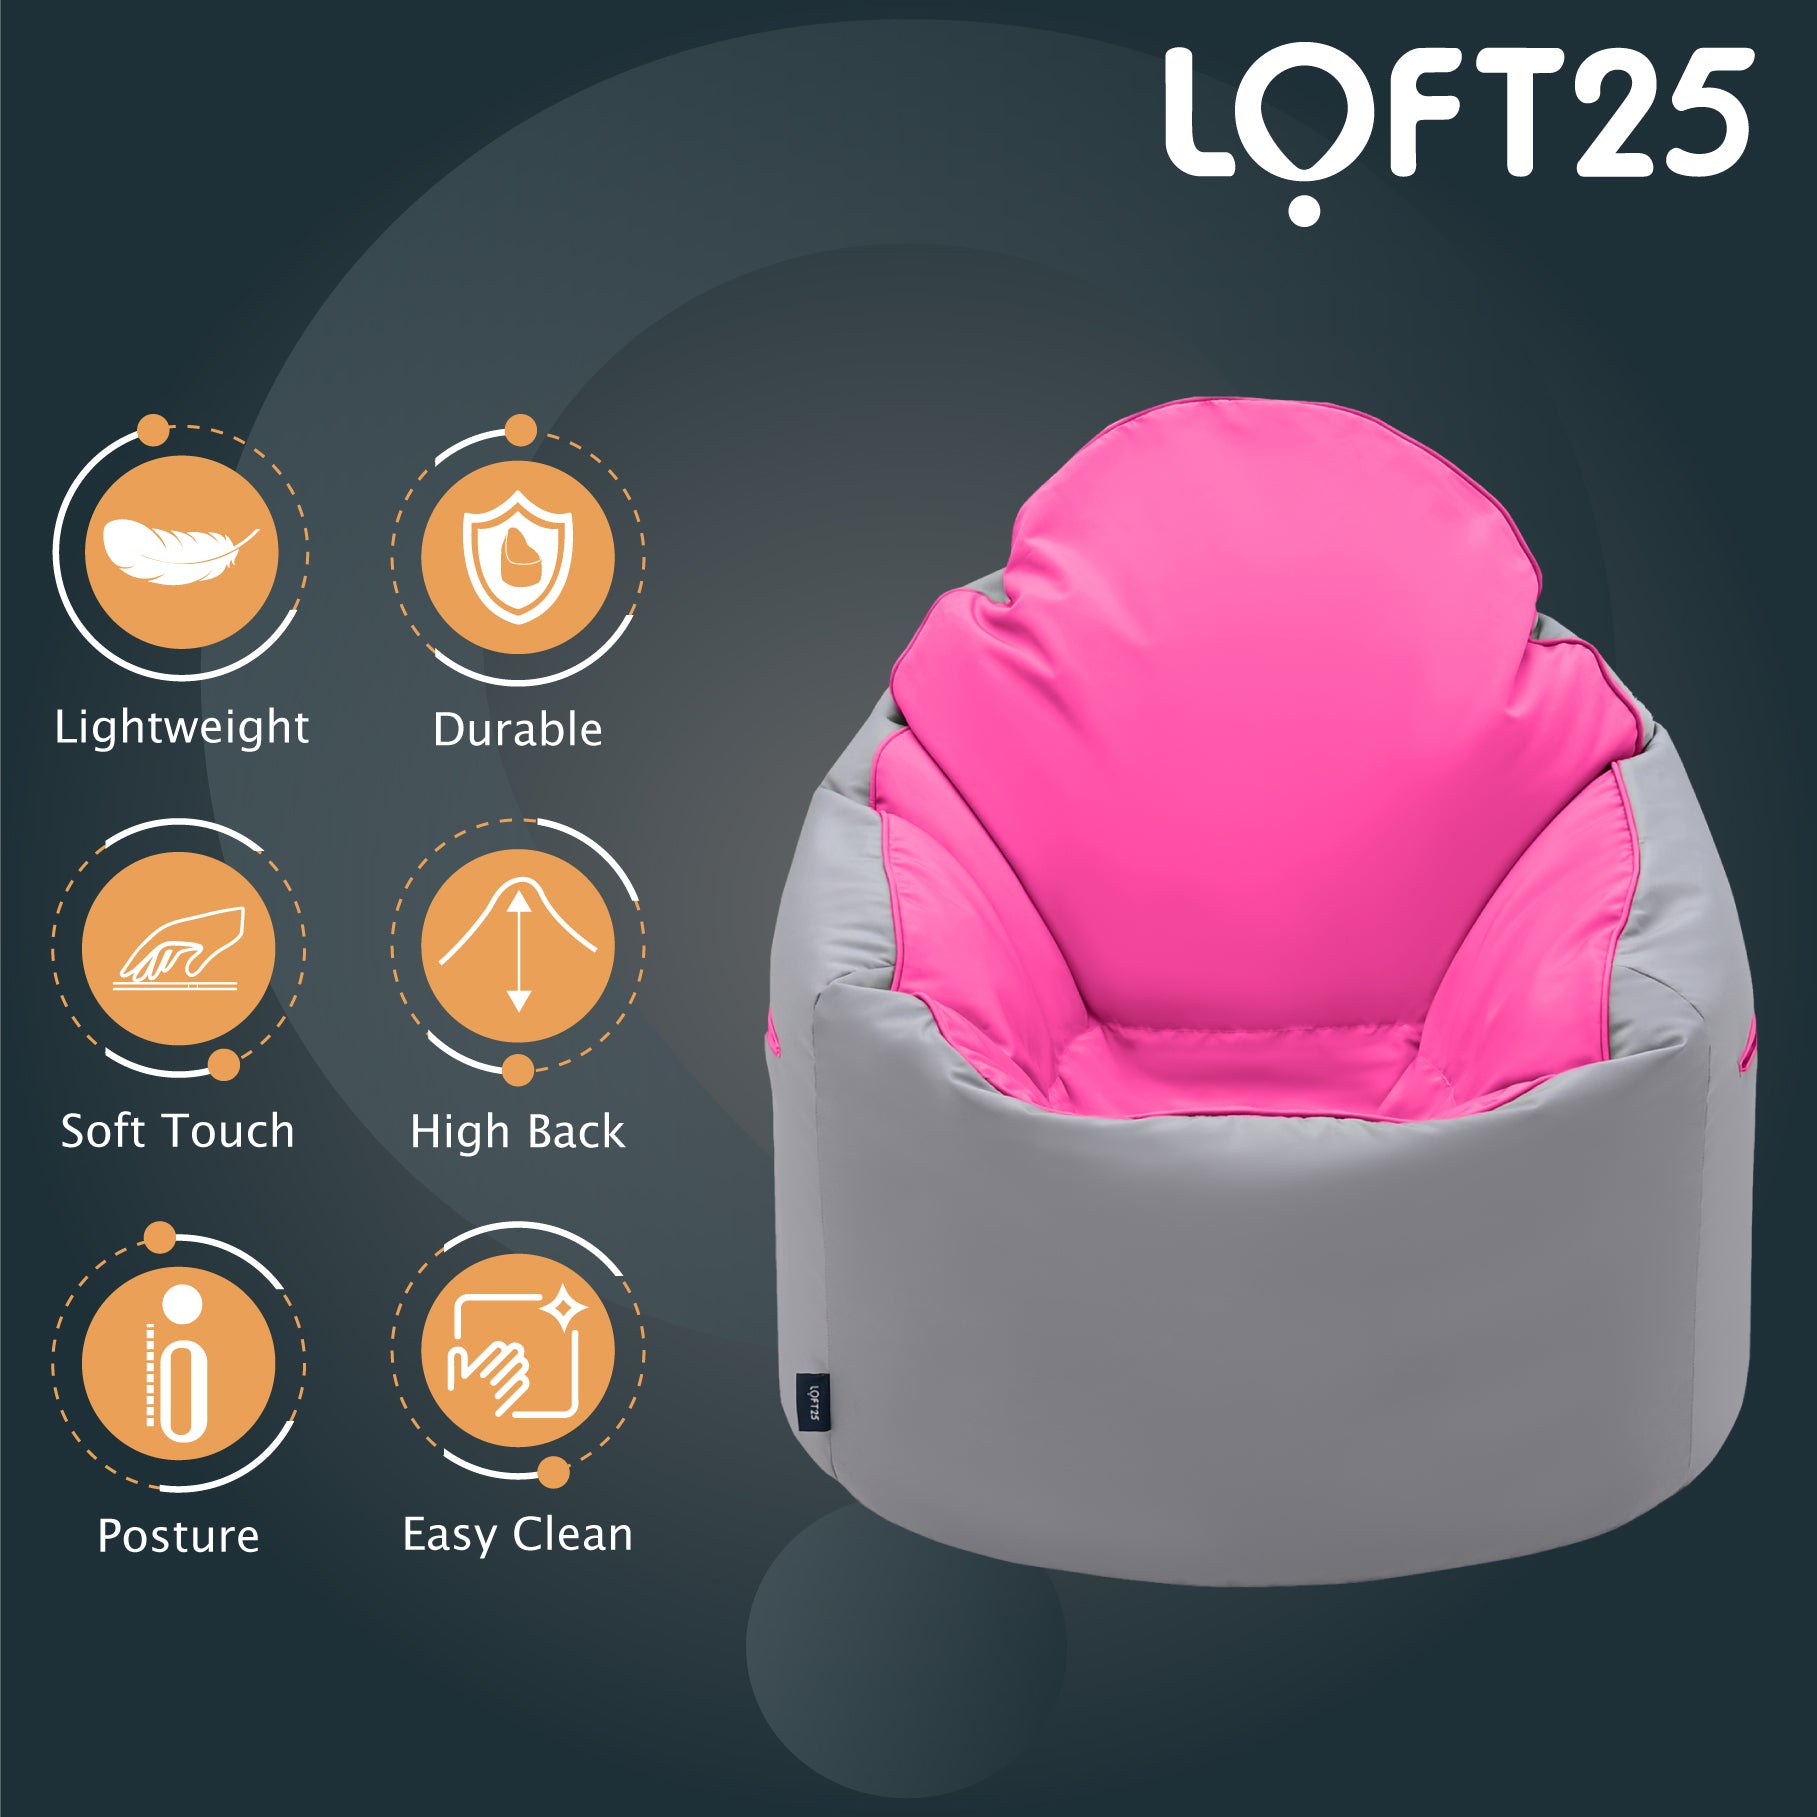 Loft 25 Adult Indoor Outdoor Bean Bag Chair